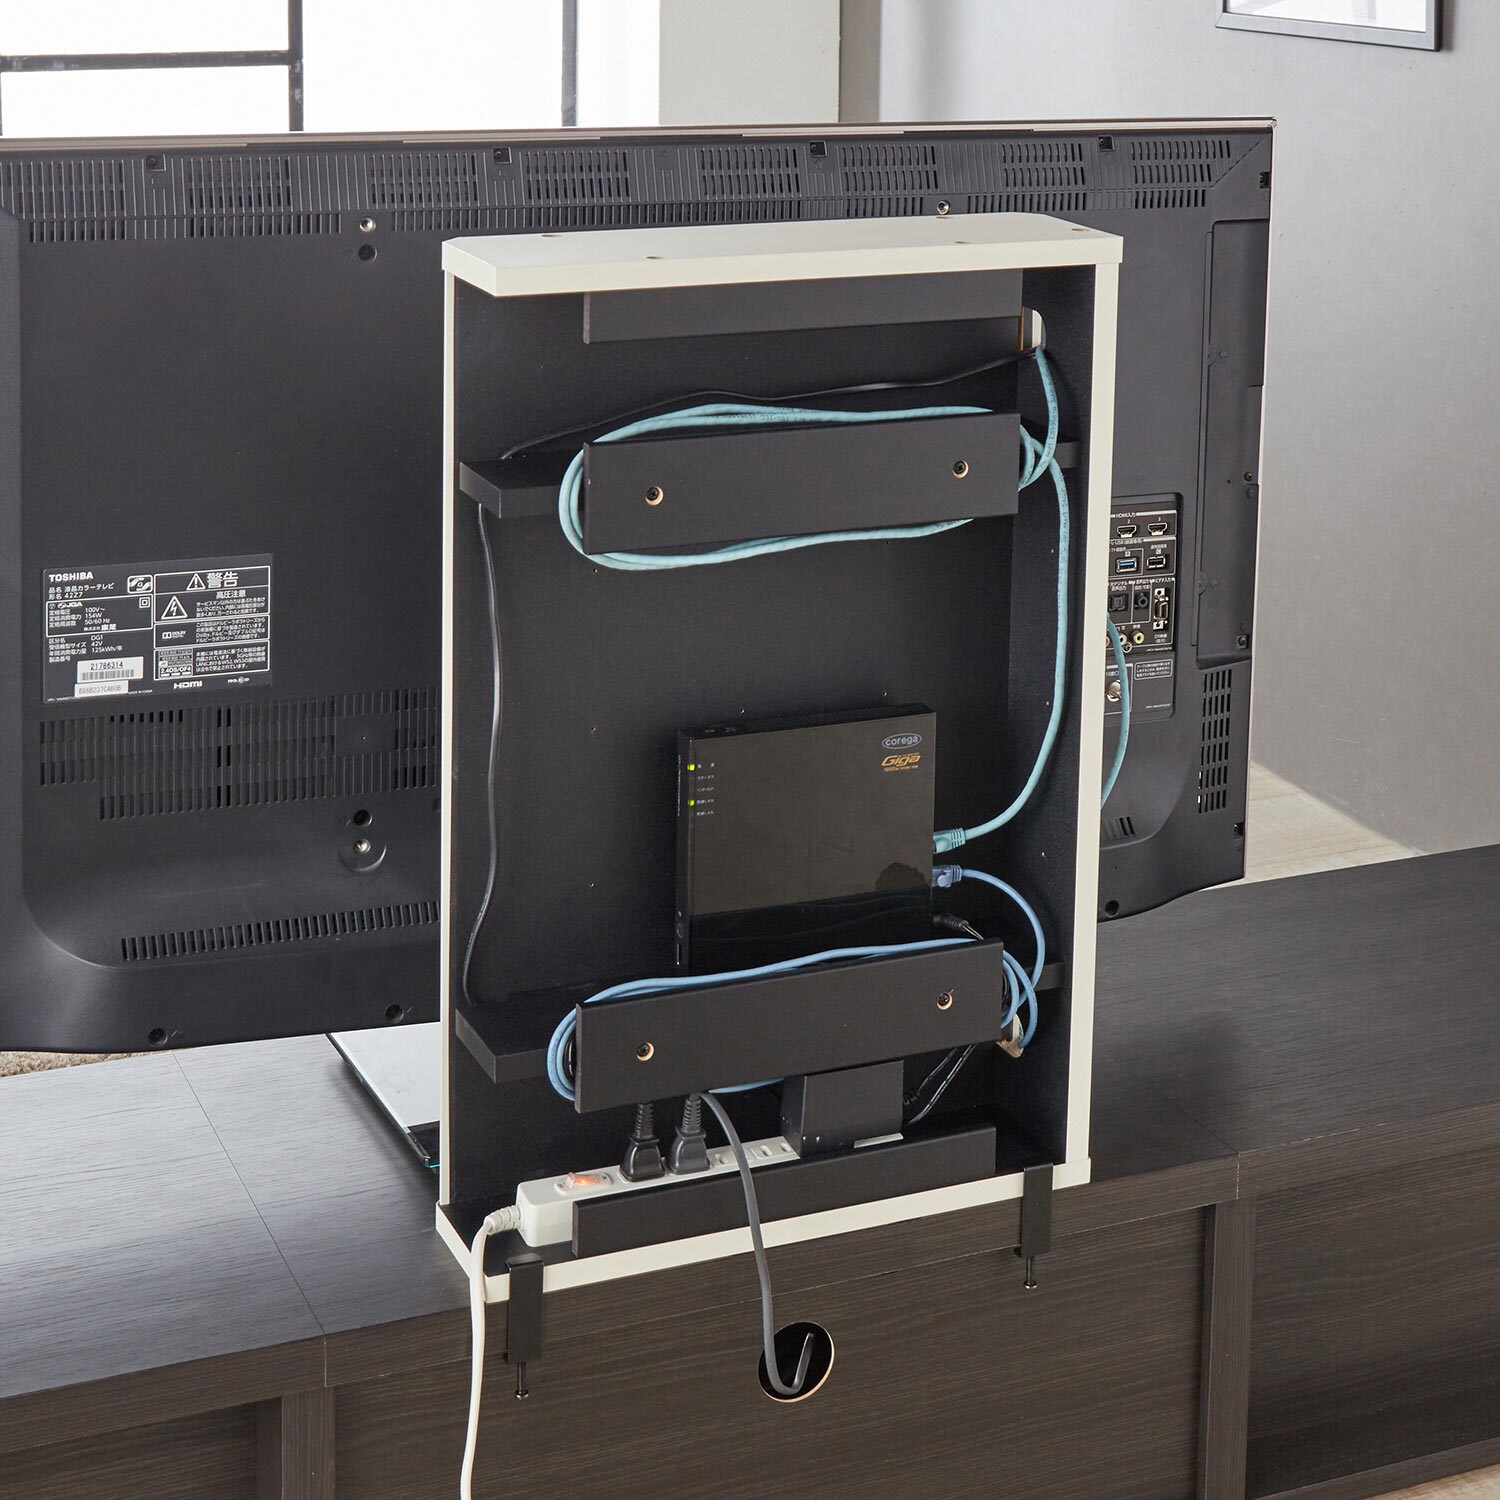 【ベルメゾン】テレビ裏のデッドスペースを有効活用!電源コード・電源タップ収納ボックス